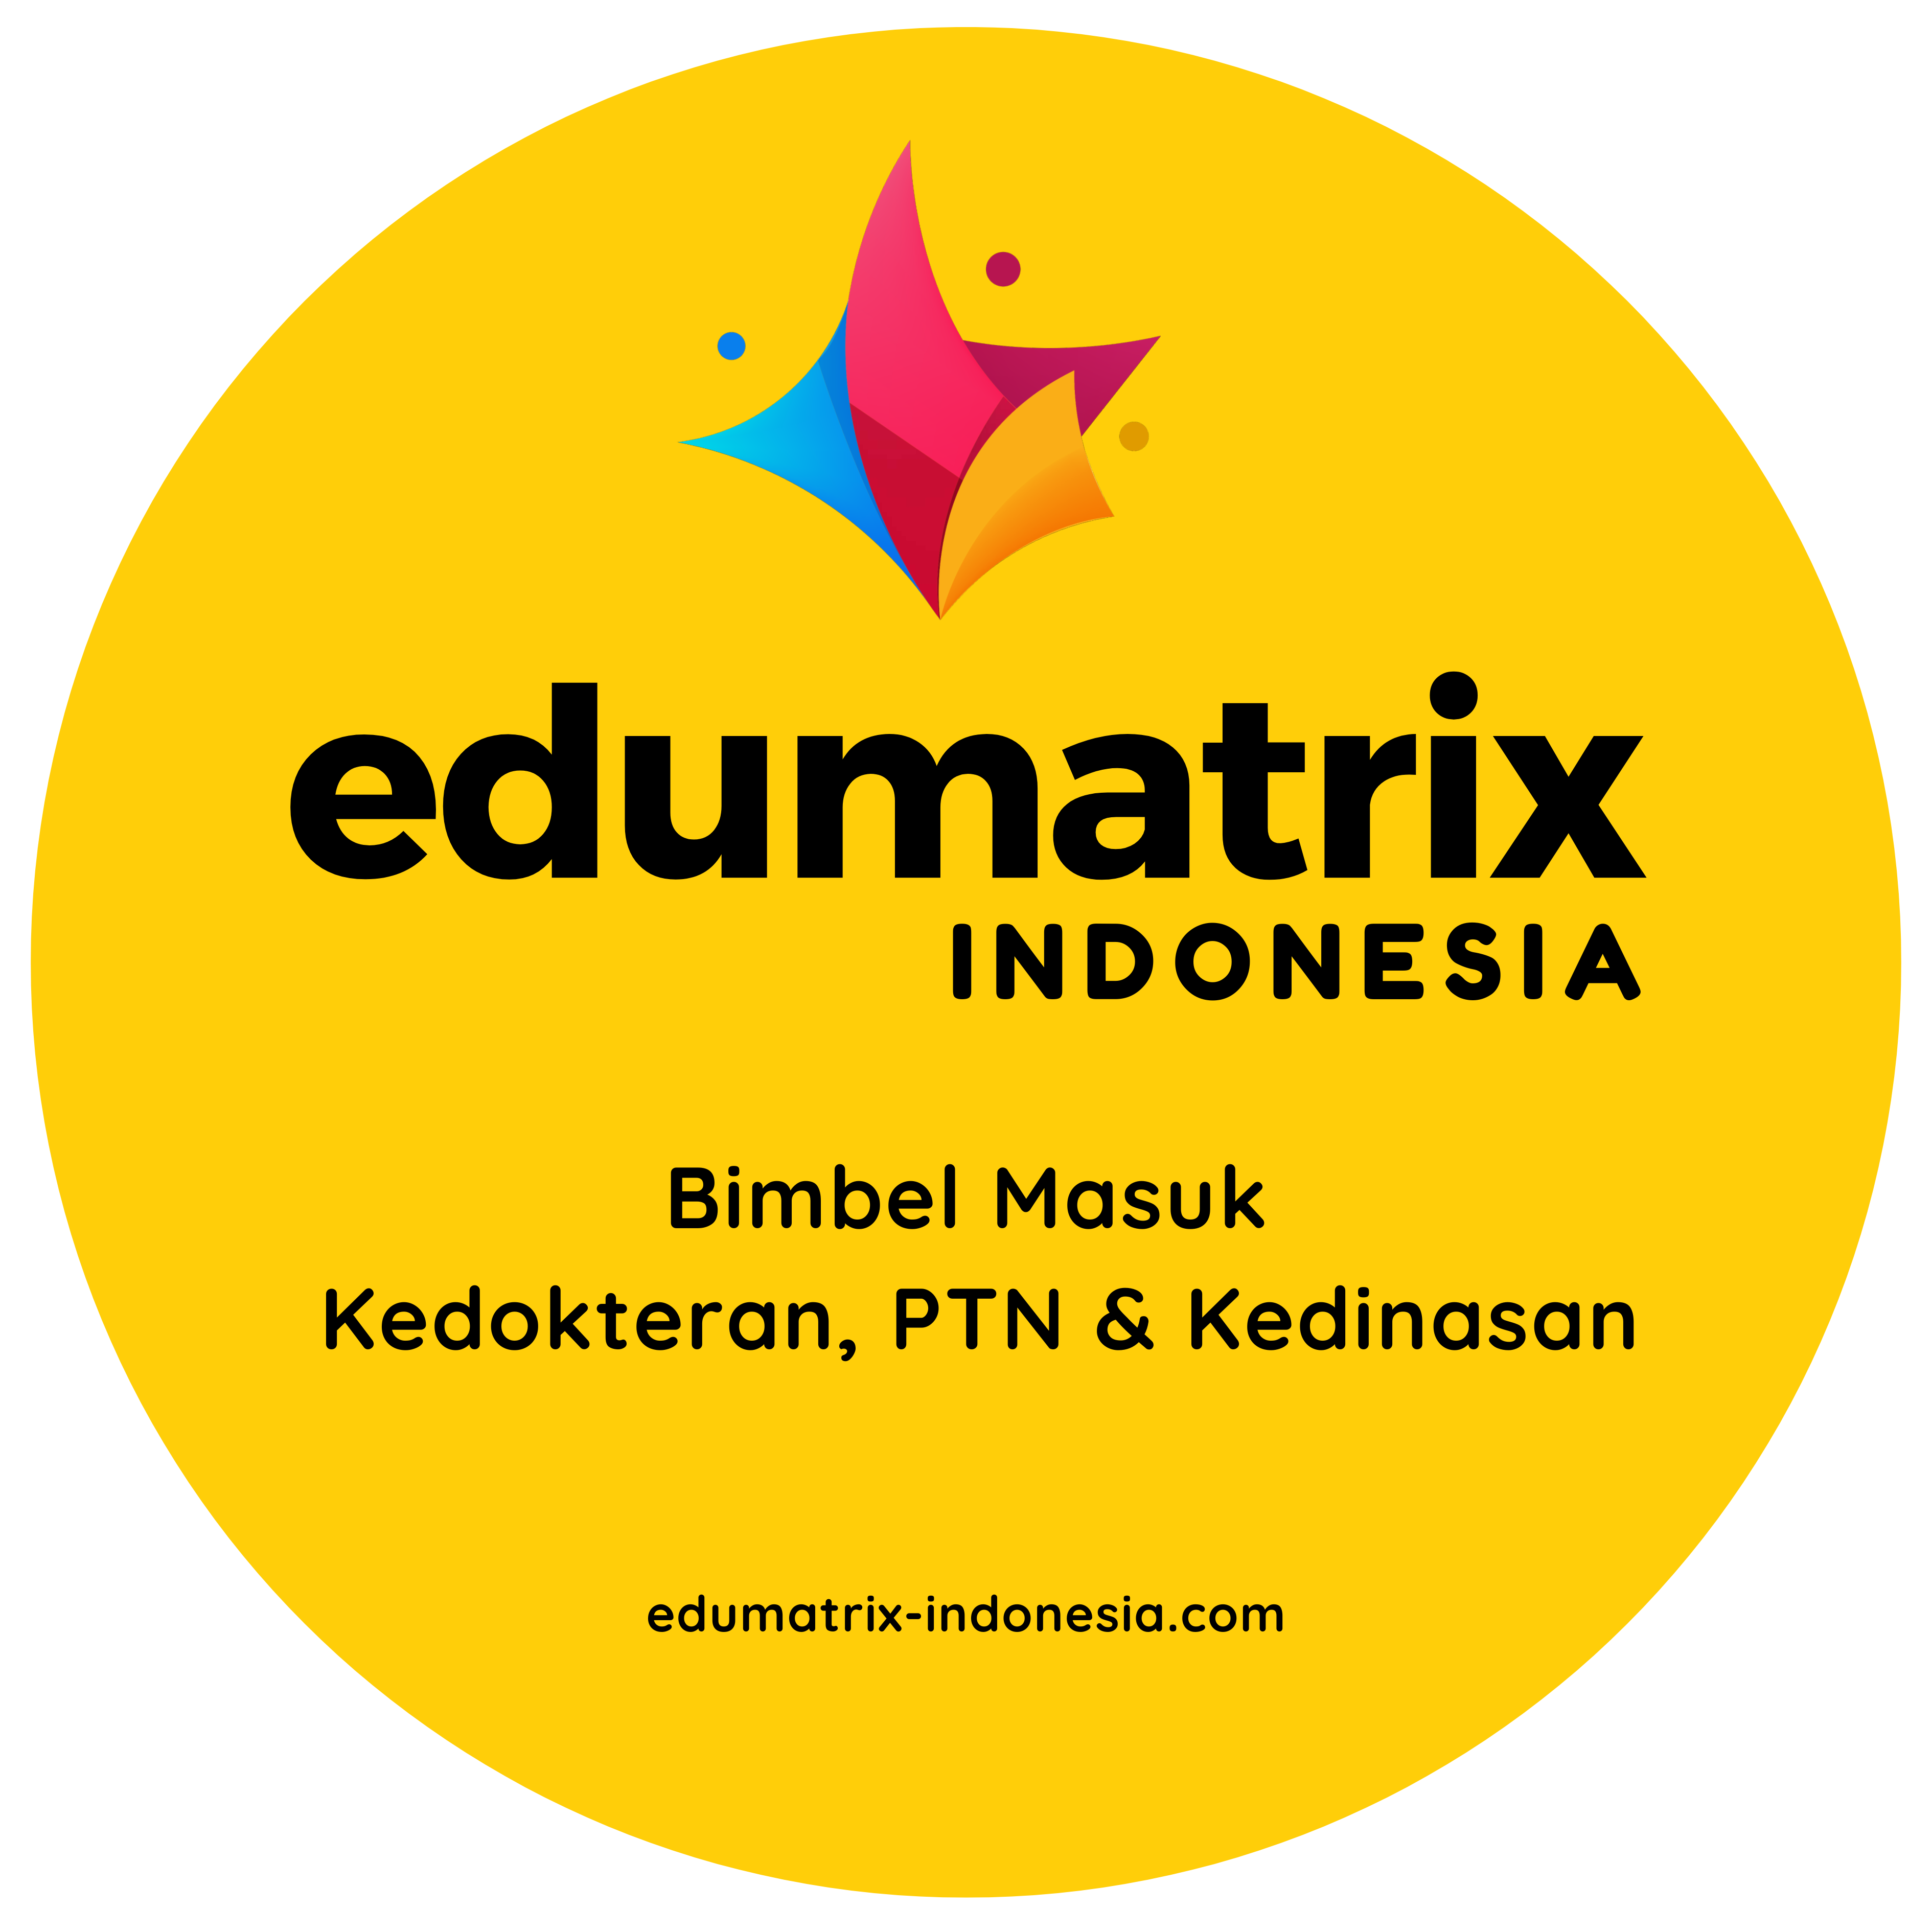 Edumatrix Indonesia